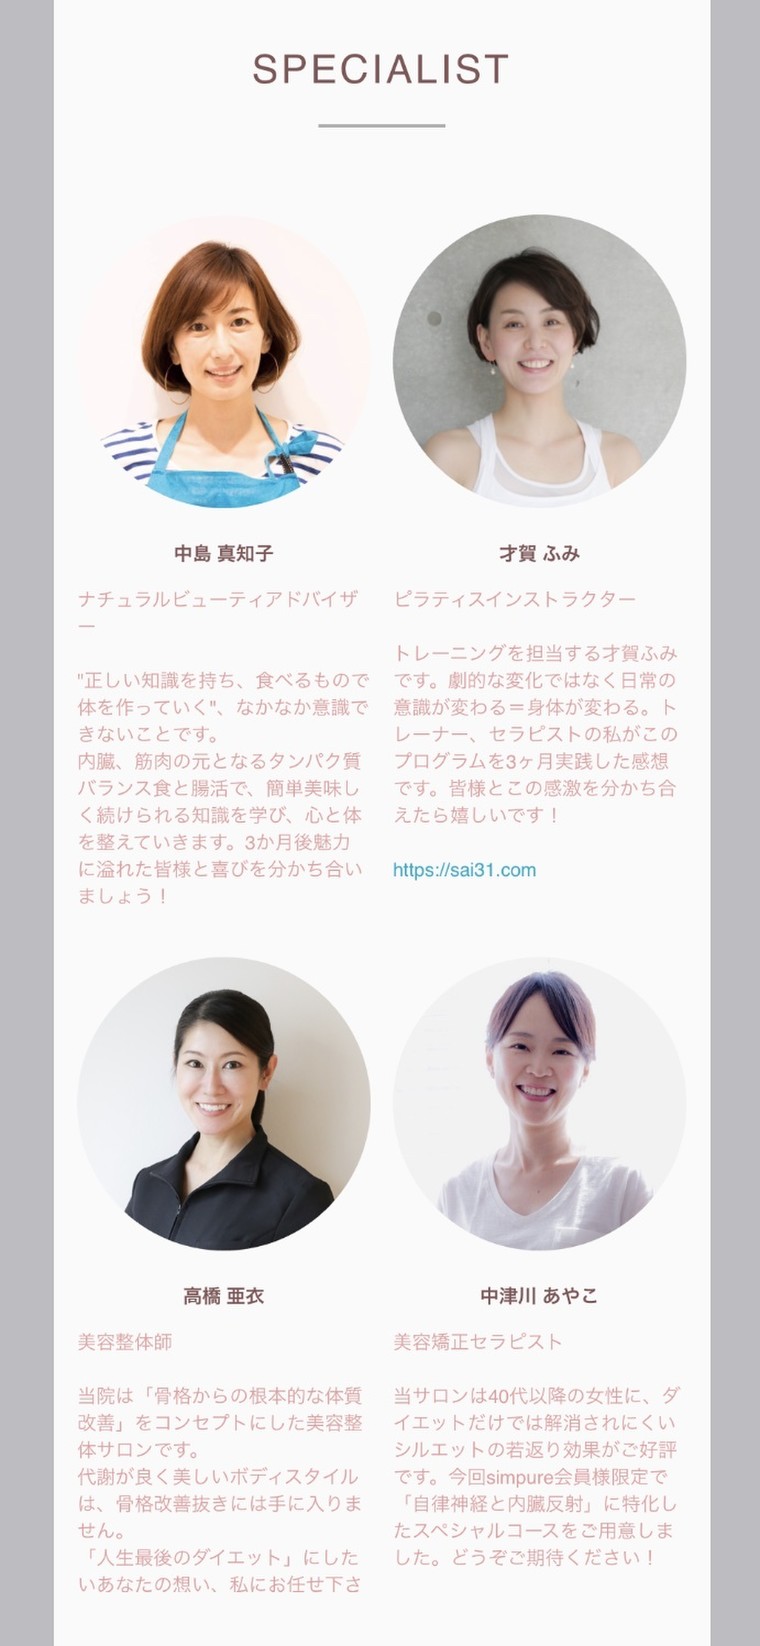 全く新しいダイエットプログラム内容公開 中島 真知子さんのブログ Cosme アットコスメ